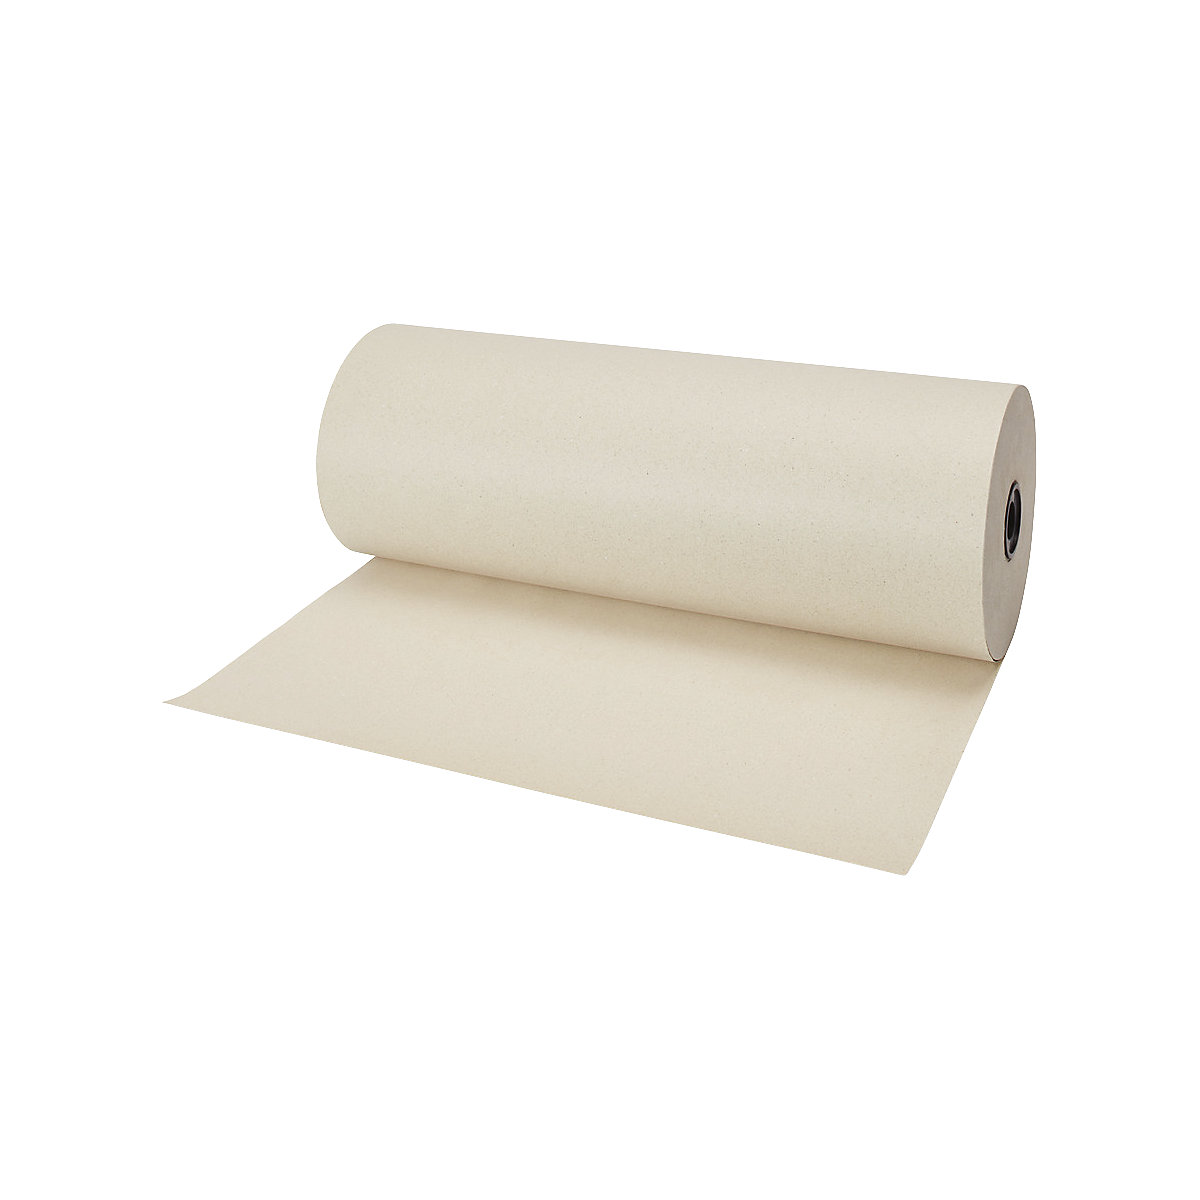 Graspapier-Packpapier TERRA auf Rolle, grüngrau, 80 g/m², LxB 100 m x 500 mm, ab 2 Stk